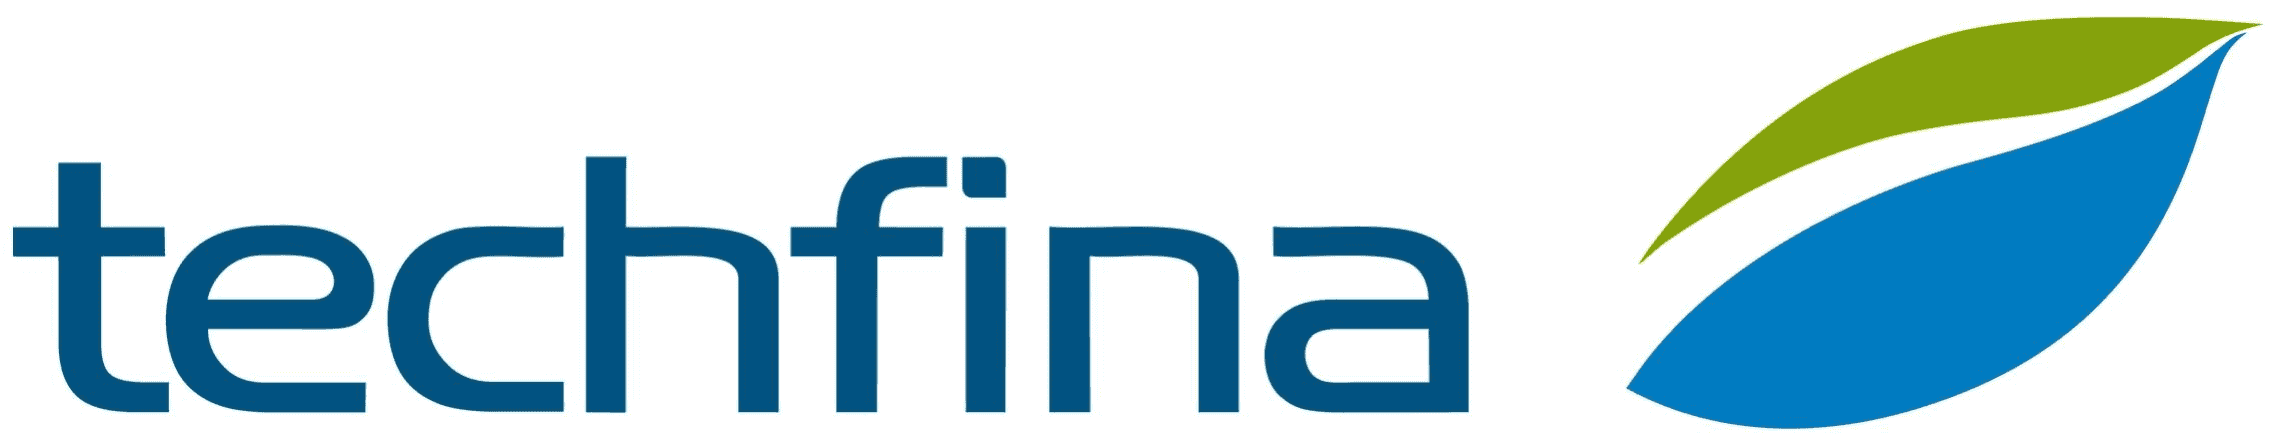 Techfina SA